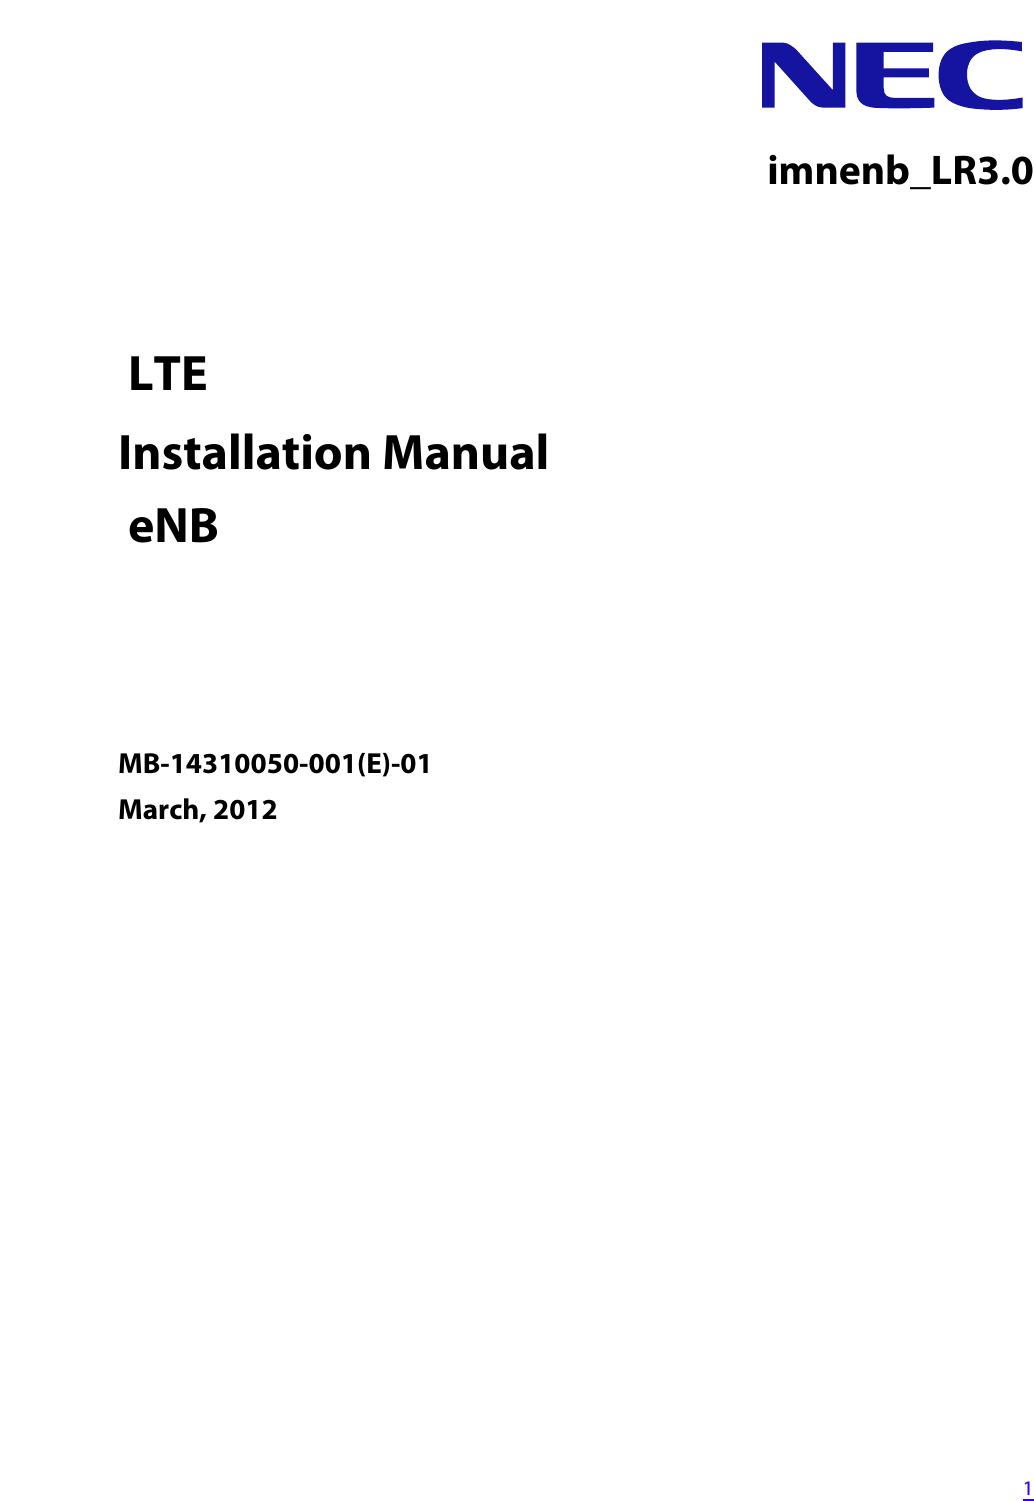   1imnenb_LR3.0 LTEInstallation Manual eNB MB-14310050-001(E)-01March, 2012